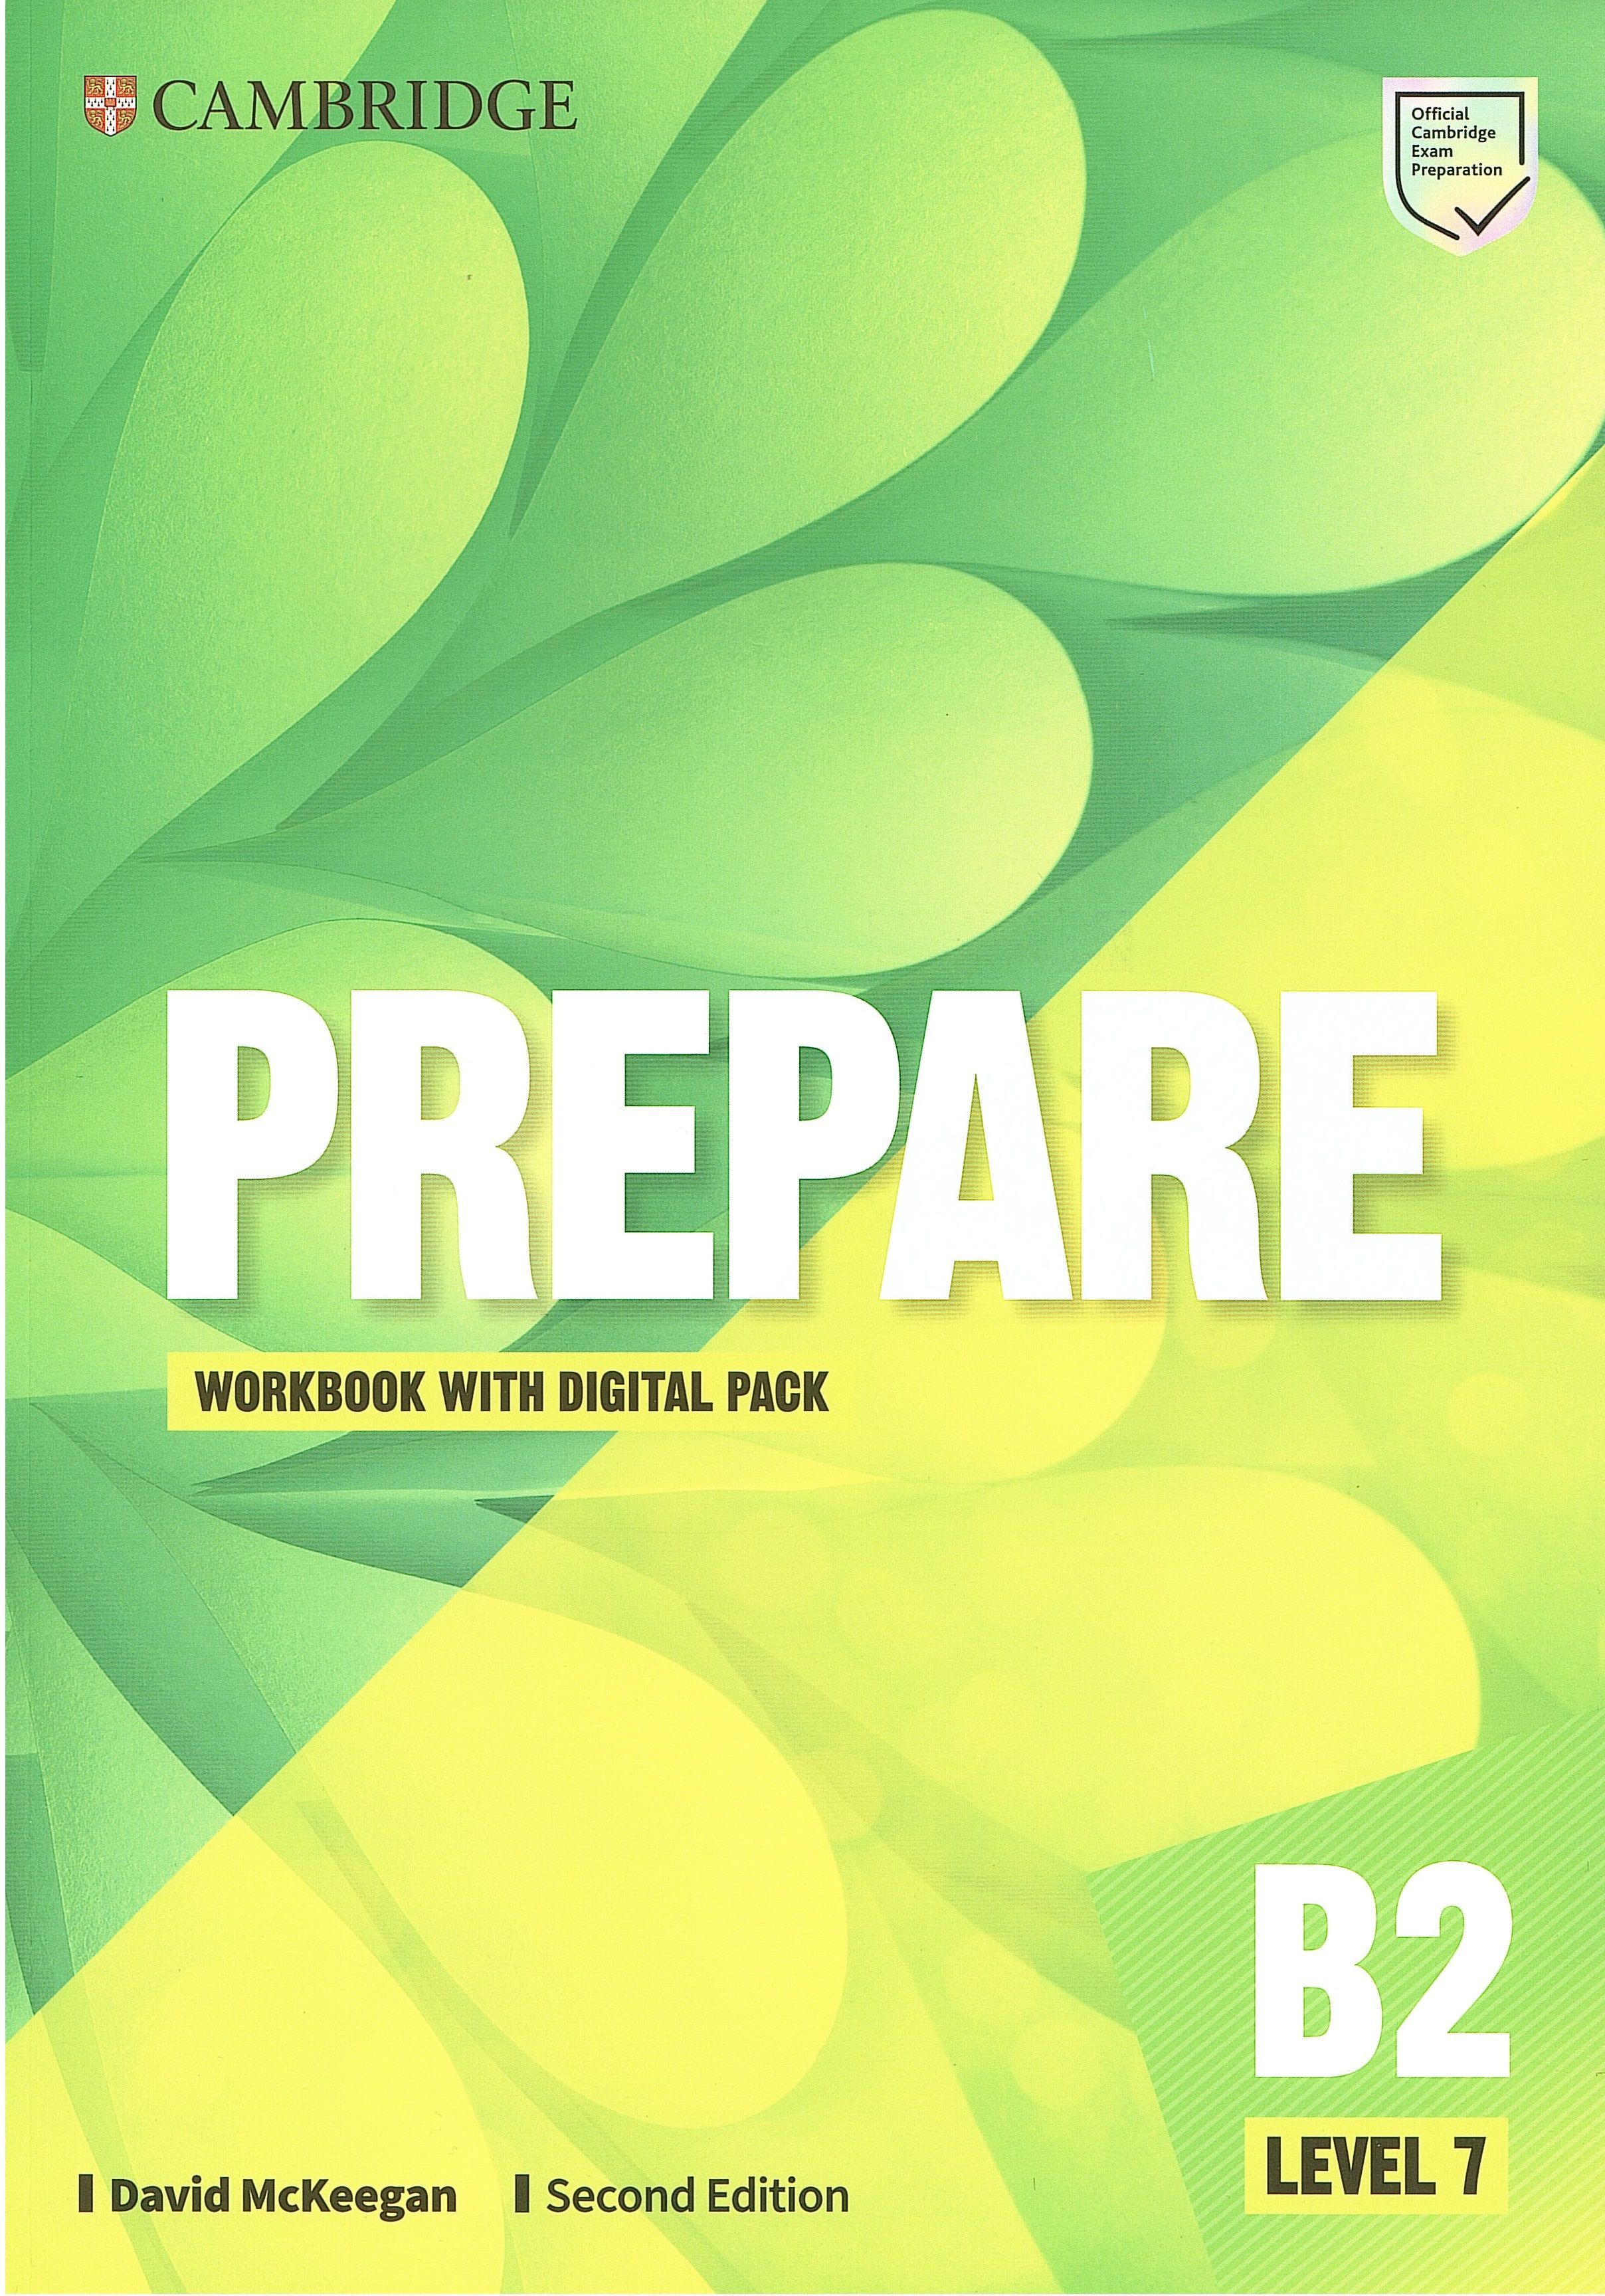 Prepare ответы. Cambridge English Workbook Level 7 prepare second Edition. Prepare 7 2nd Edition. Prepare second Edition Level 7. Учебник prepare 7.